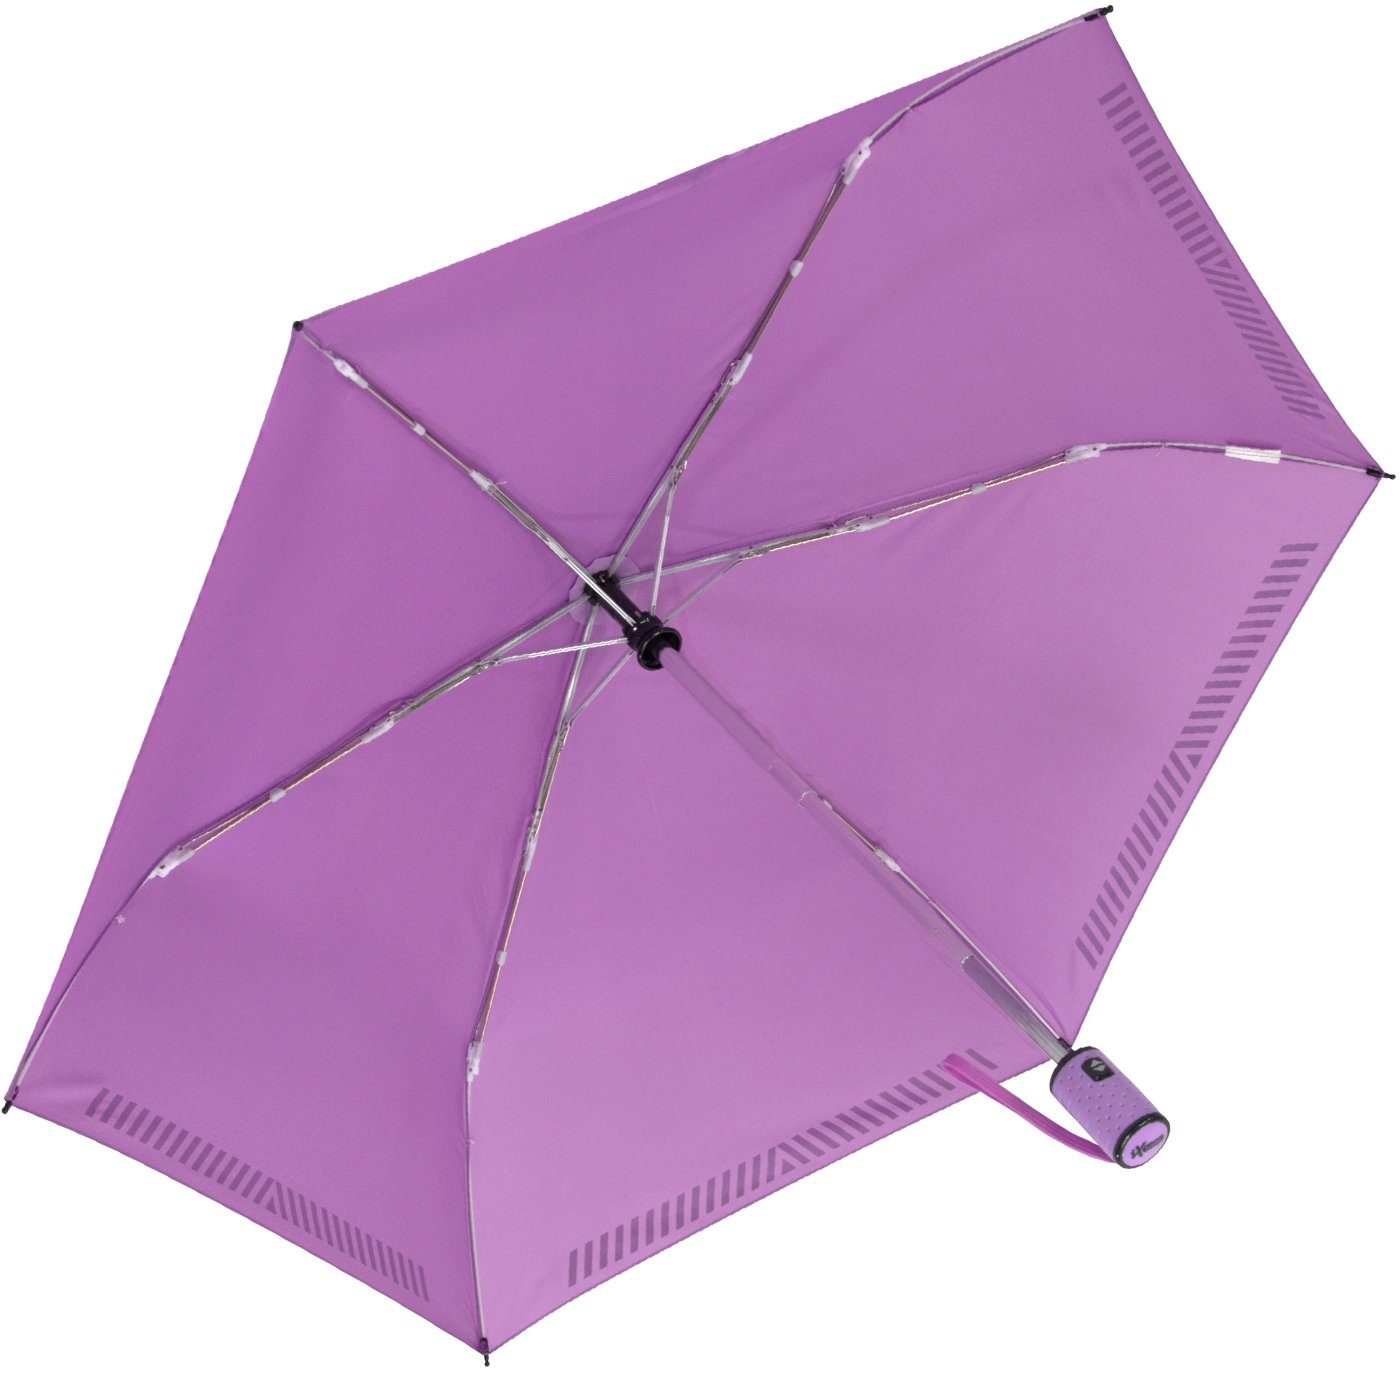 iX-brella Taschenregenschirm Kinderschirm mit Auf-Zu-Automatik, hell-lila durch Sicherheit reflektierend, - Reflex-Streifen